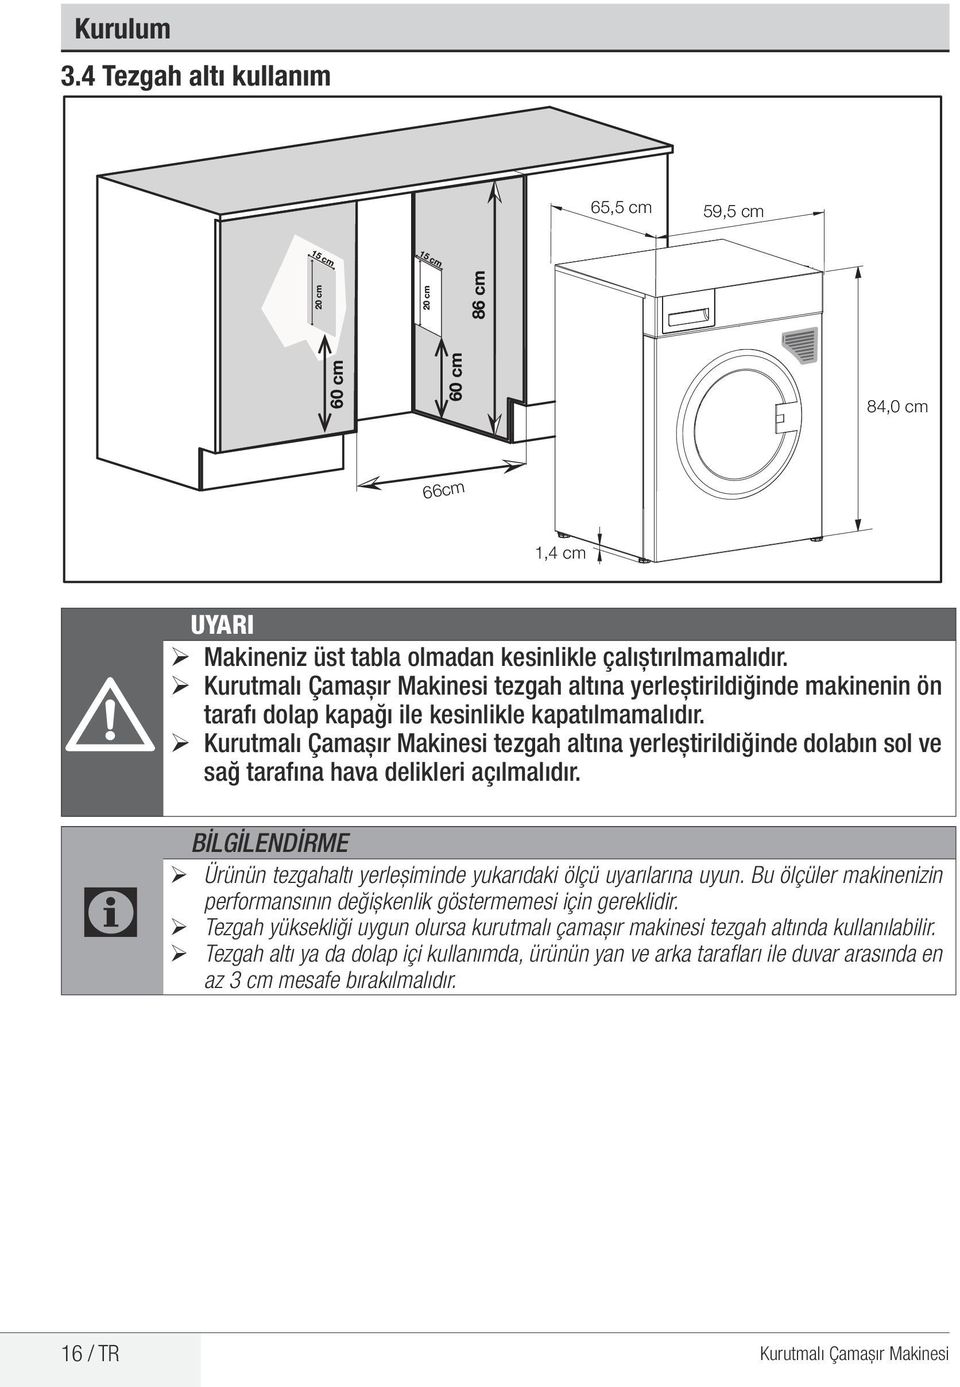 ¾ Kurutmalı Çamaşır Makinesi tezgah altına yerleştirildiğinde dolabın sol ve sağ tarafına hava delikleri açılmalıdır. BİLGİLENDİRME ¾ Ürünün tezgahaltı yerleşiminde yukarıdaki ölçü uyarılarına uyun.